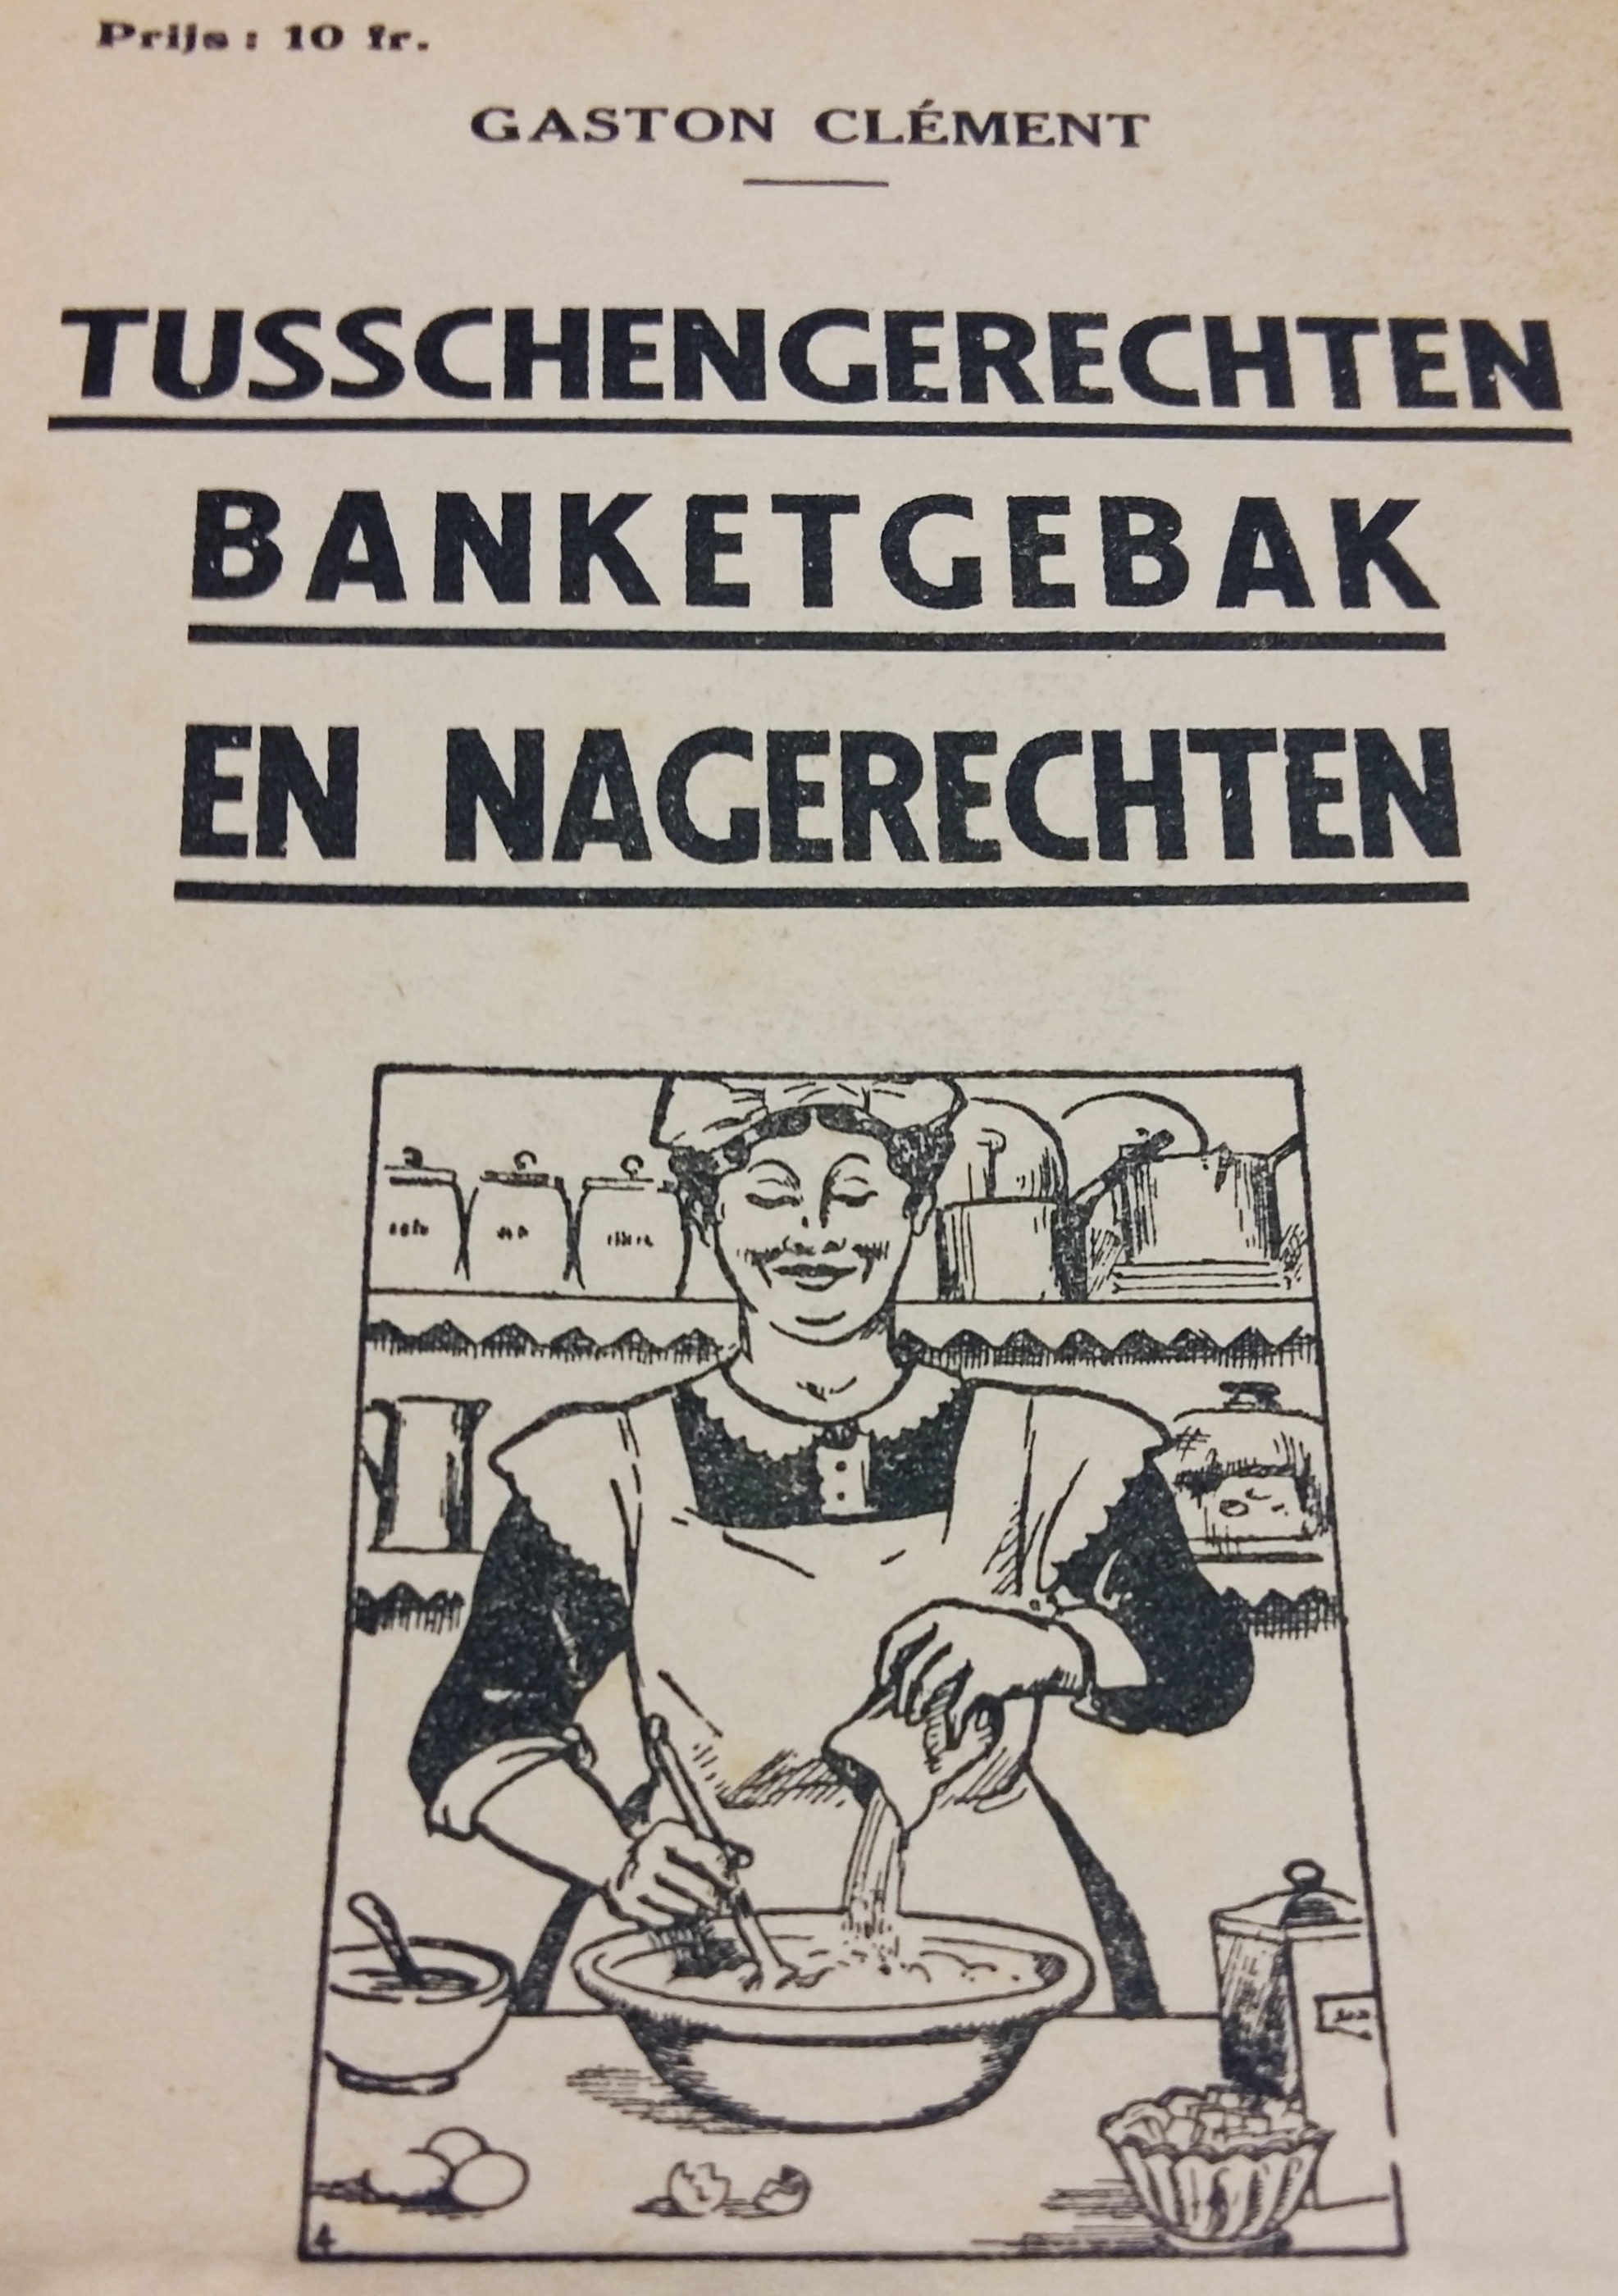 ‘Tusschengerechten, banketgebak en nagerechten’, ca. 1930. Collectie Erfgoedbibliotheek Hendrik Conscience, Antwerpen.